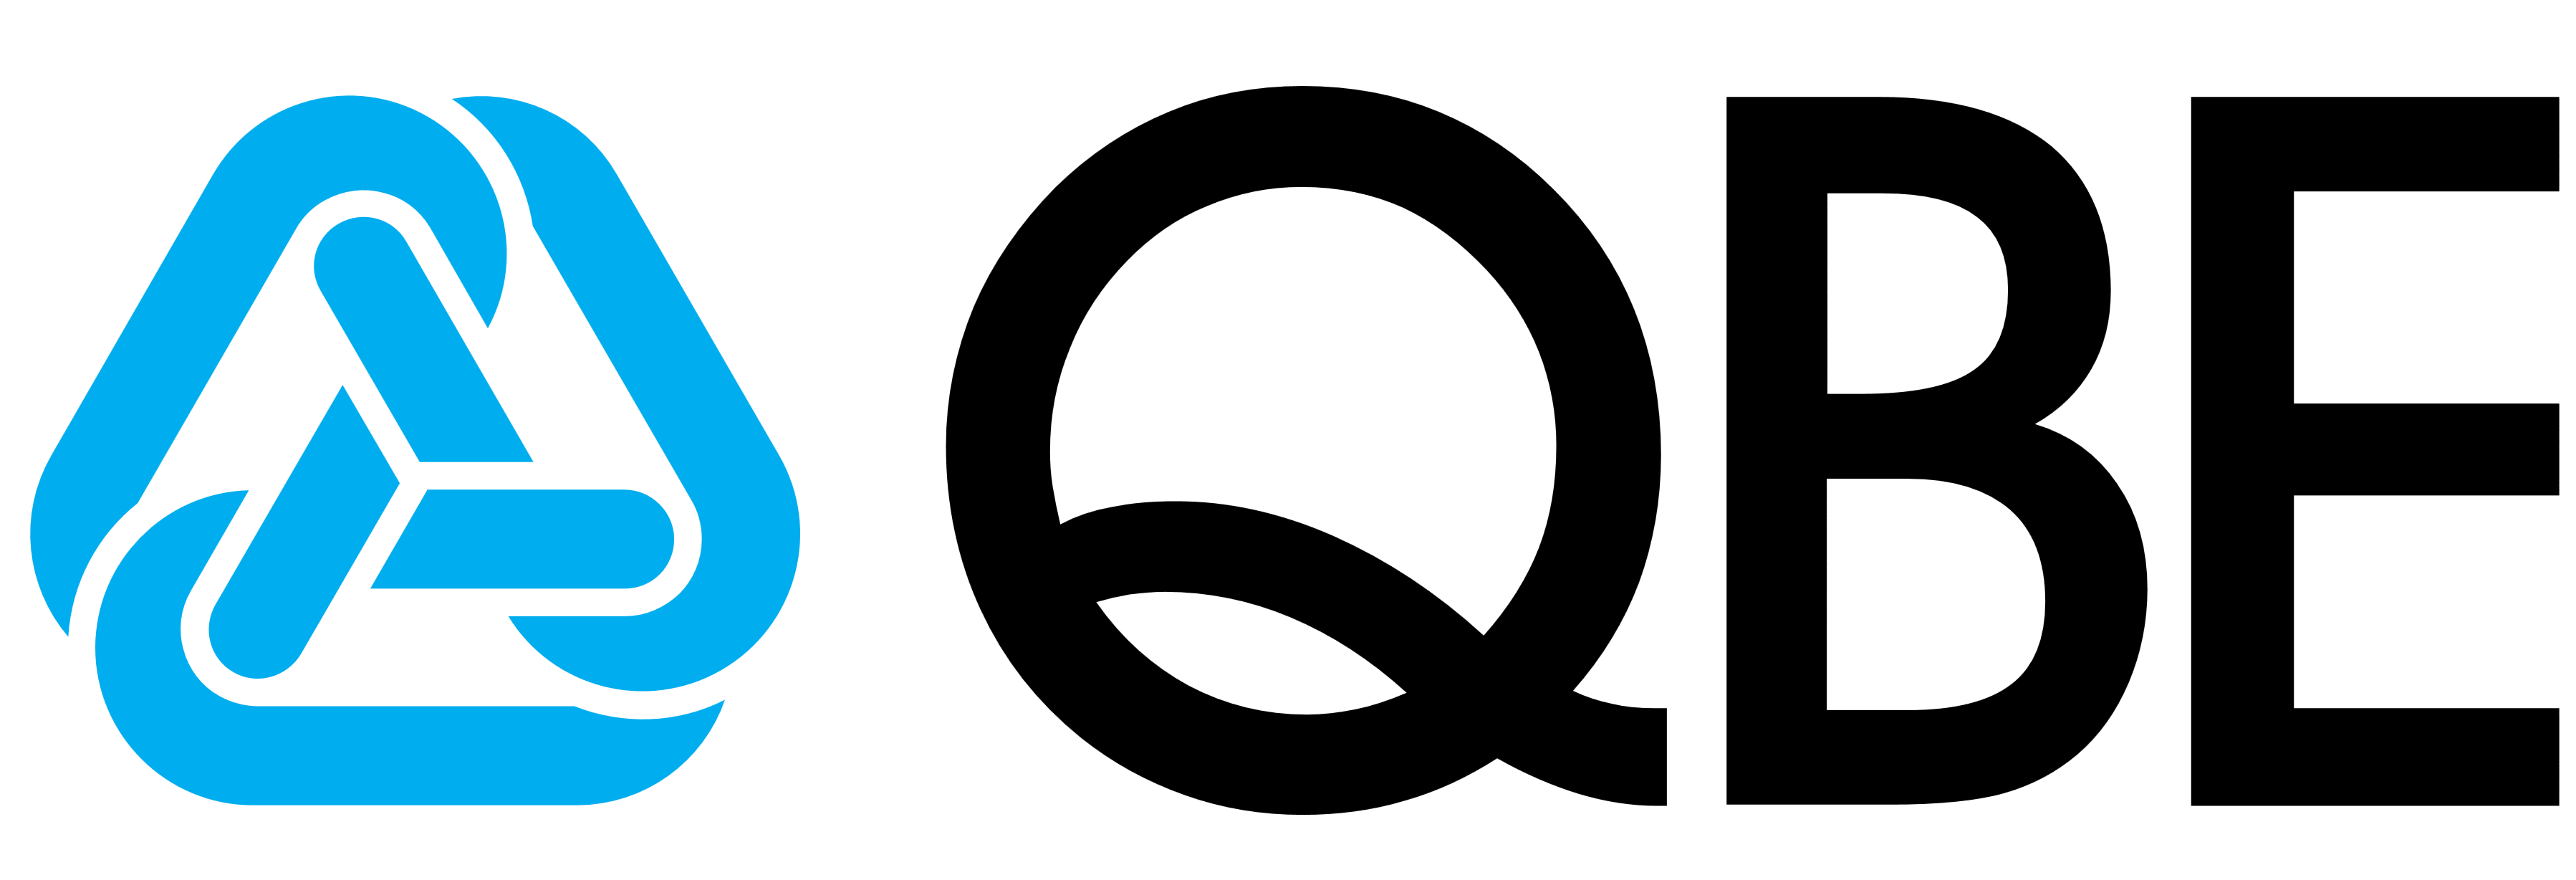 QBE logo, logotype